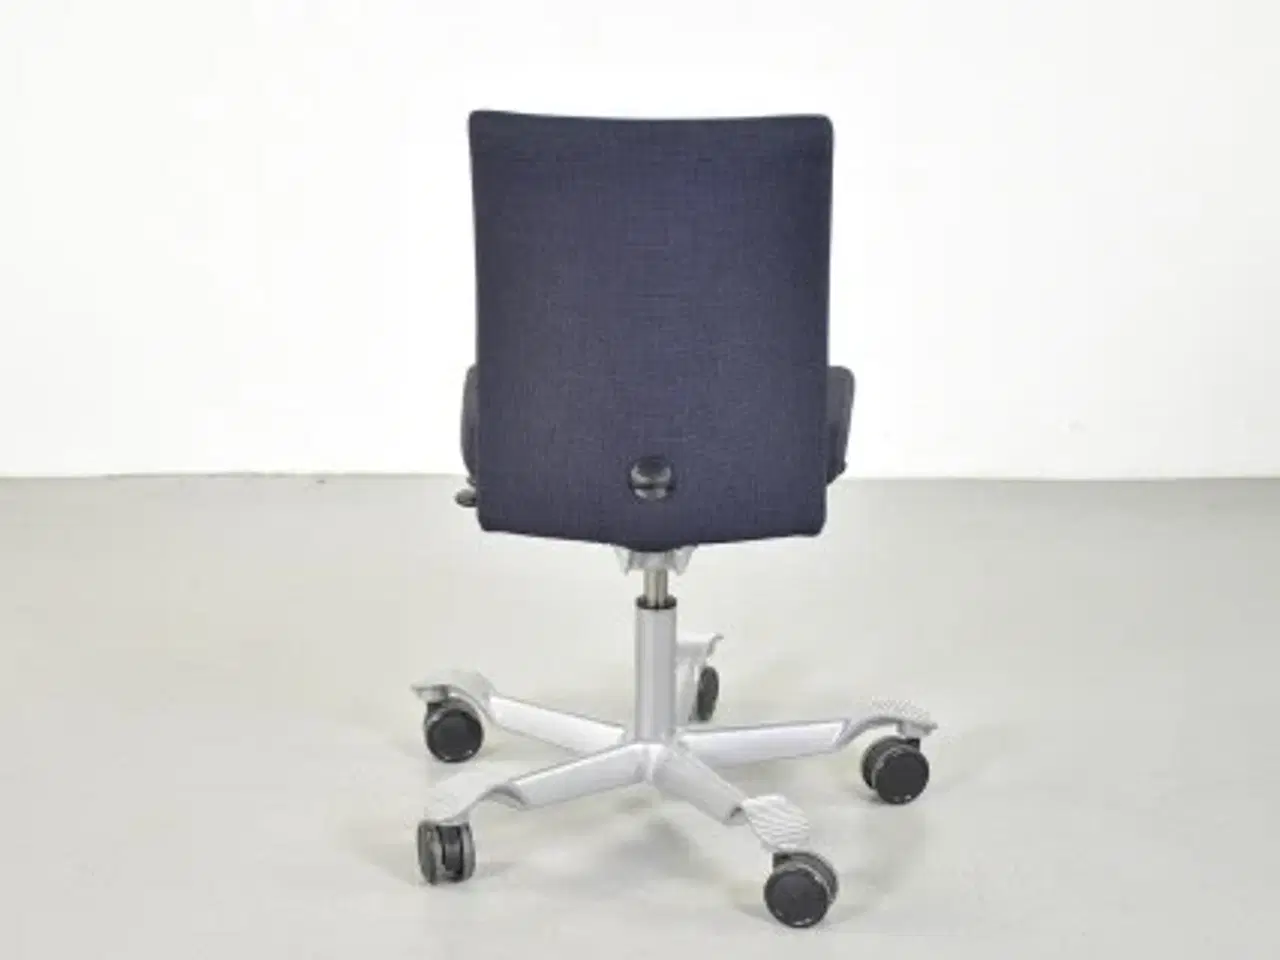 Billede 3 - Häg h04 credo 4200 kontorstol med sort/blå polster